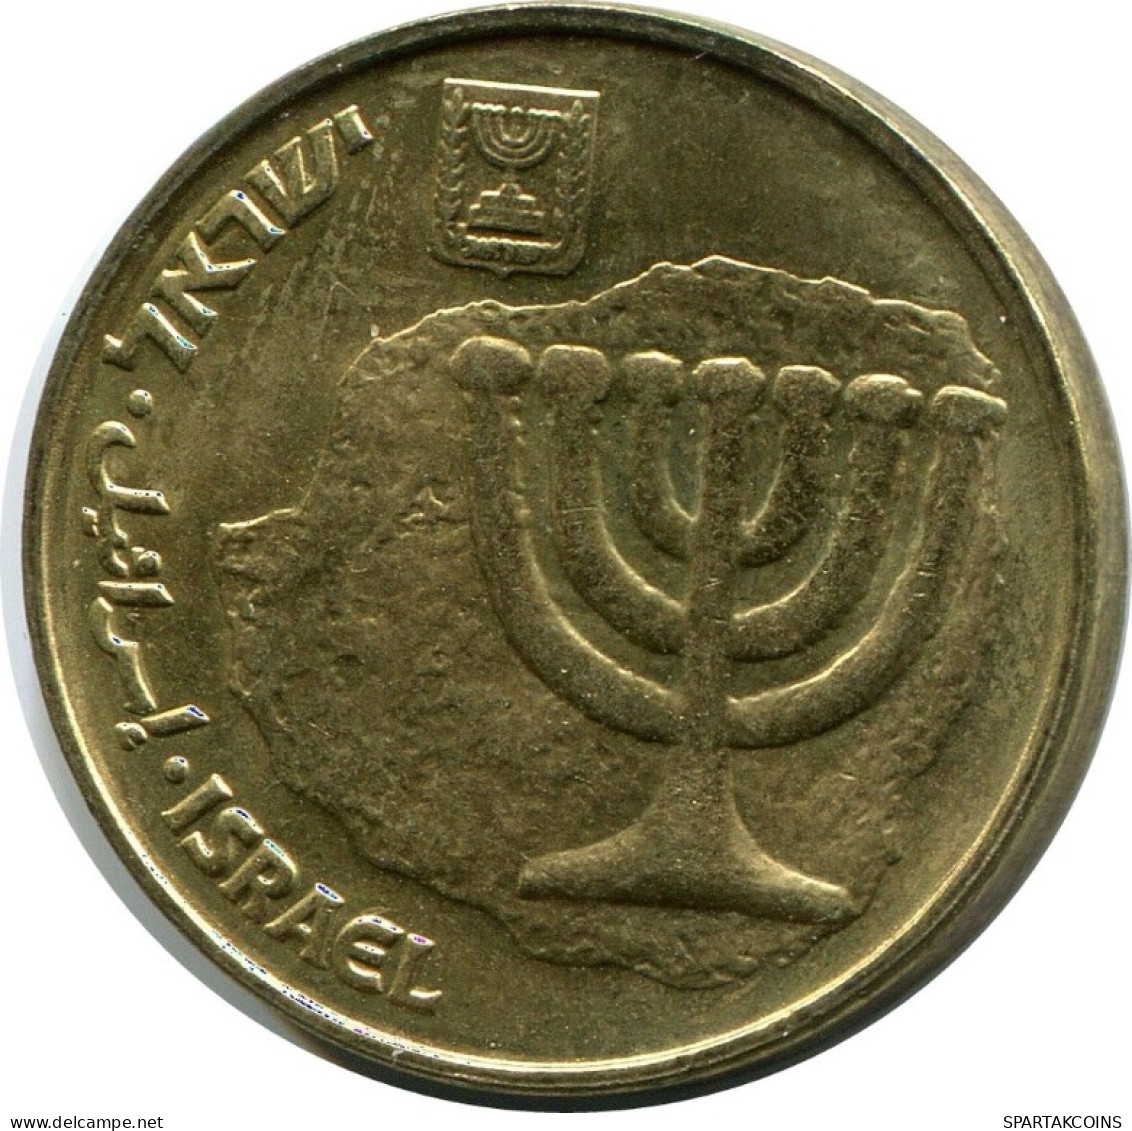 10 AGOROT 1992 ISRAEL Moneda #AH846.E.A - Israel